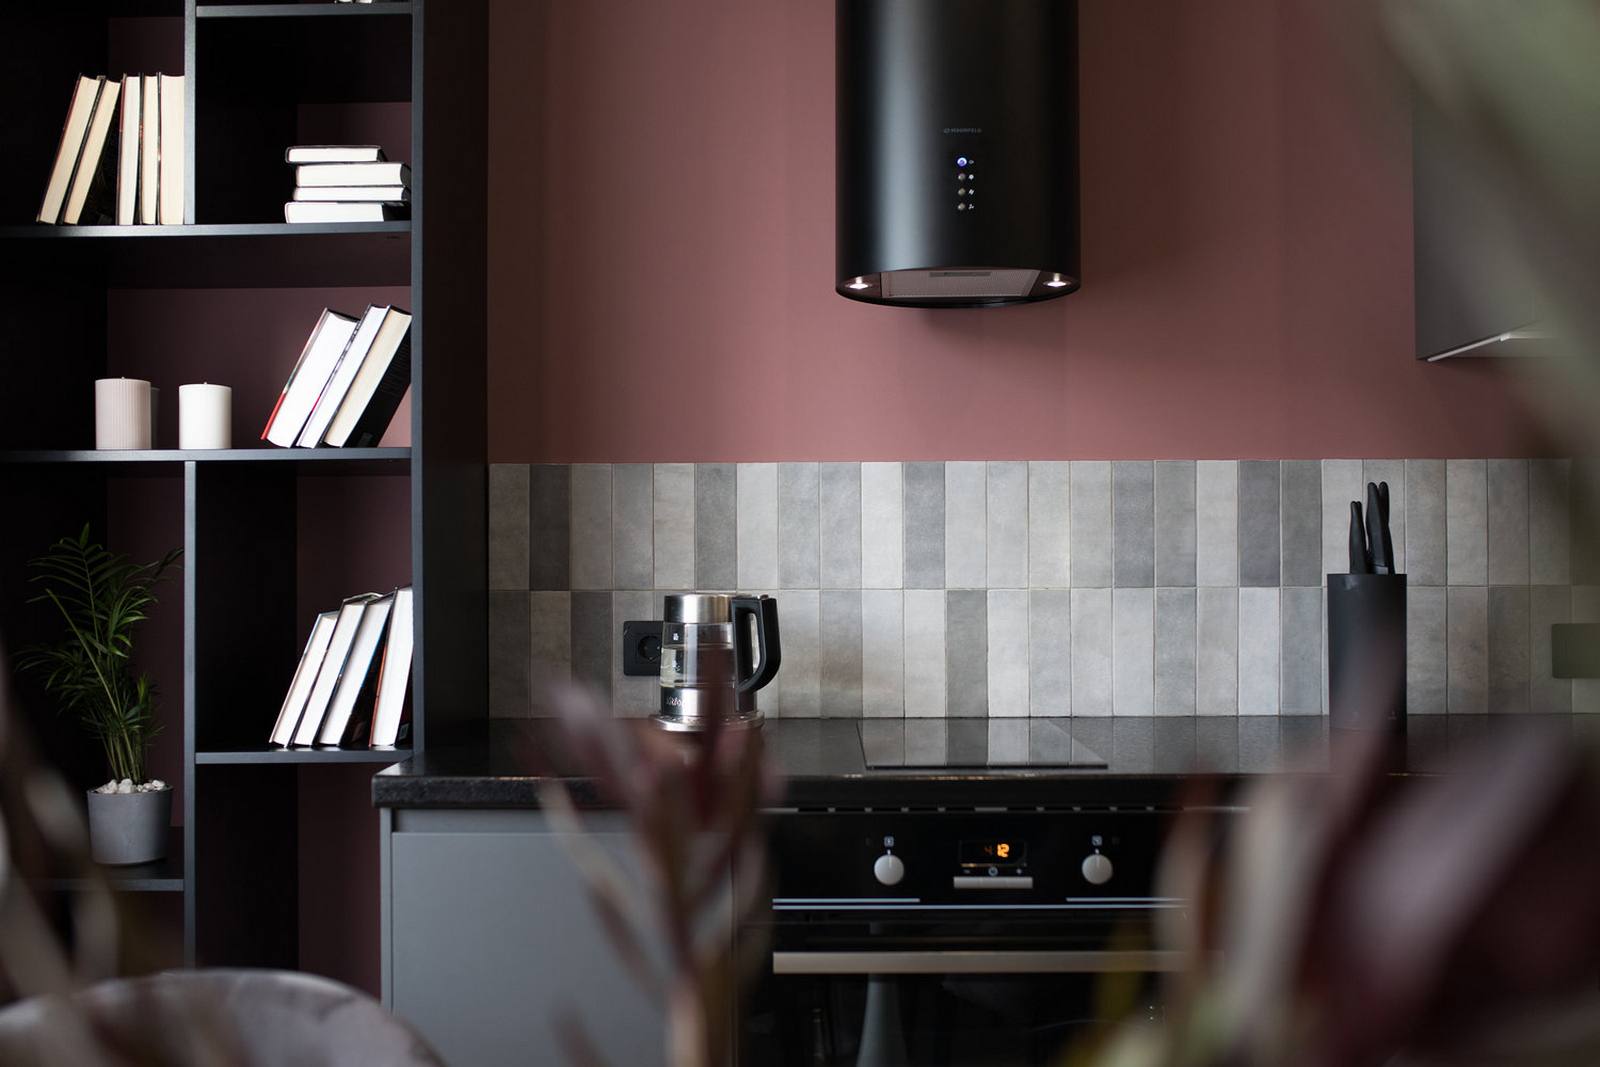 Tường phòng bếp sử dụng sơn màu hồng đất cho cảm giác ấm áp, nổi bật những viên gạch hình chữ nhật xếp dọc khu vực backsplash, bên trên là thiết bị hút mùi hiện đại cùng tông màu đen sắc sảo.